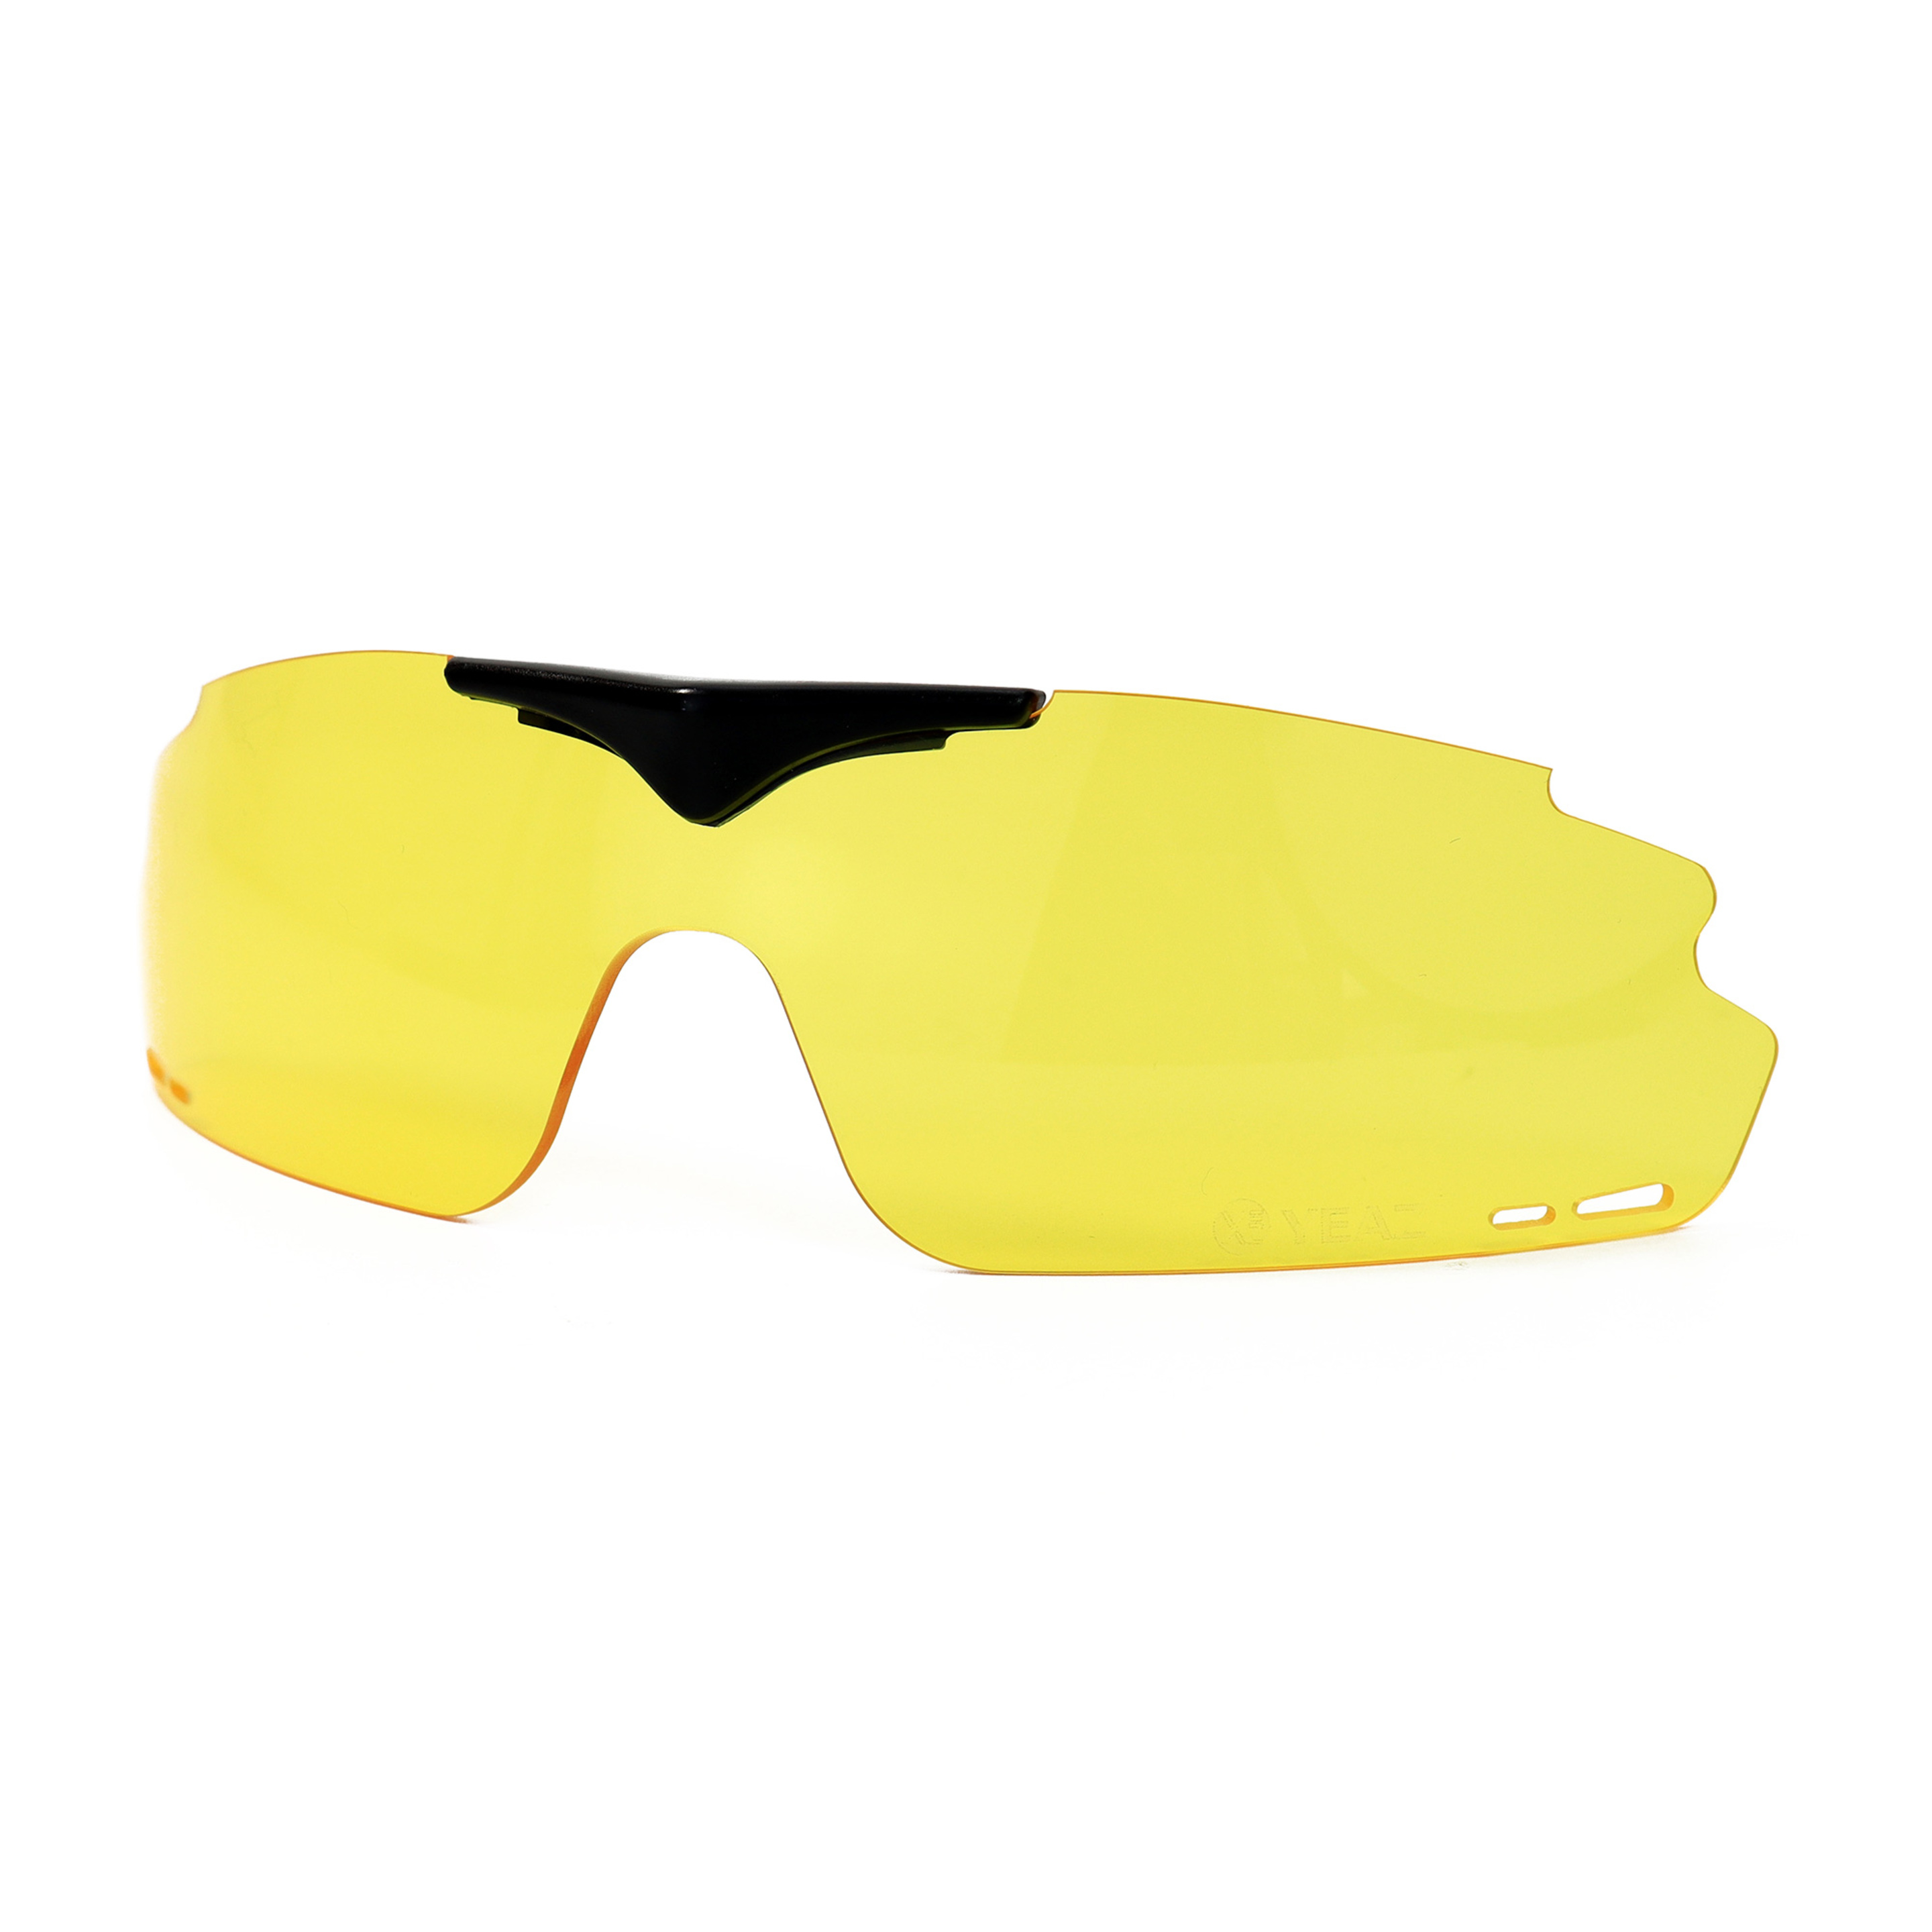 Cristales Para Gafas De Sol Sunup - amarillo-negro - 